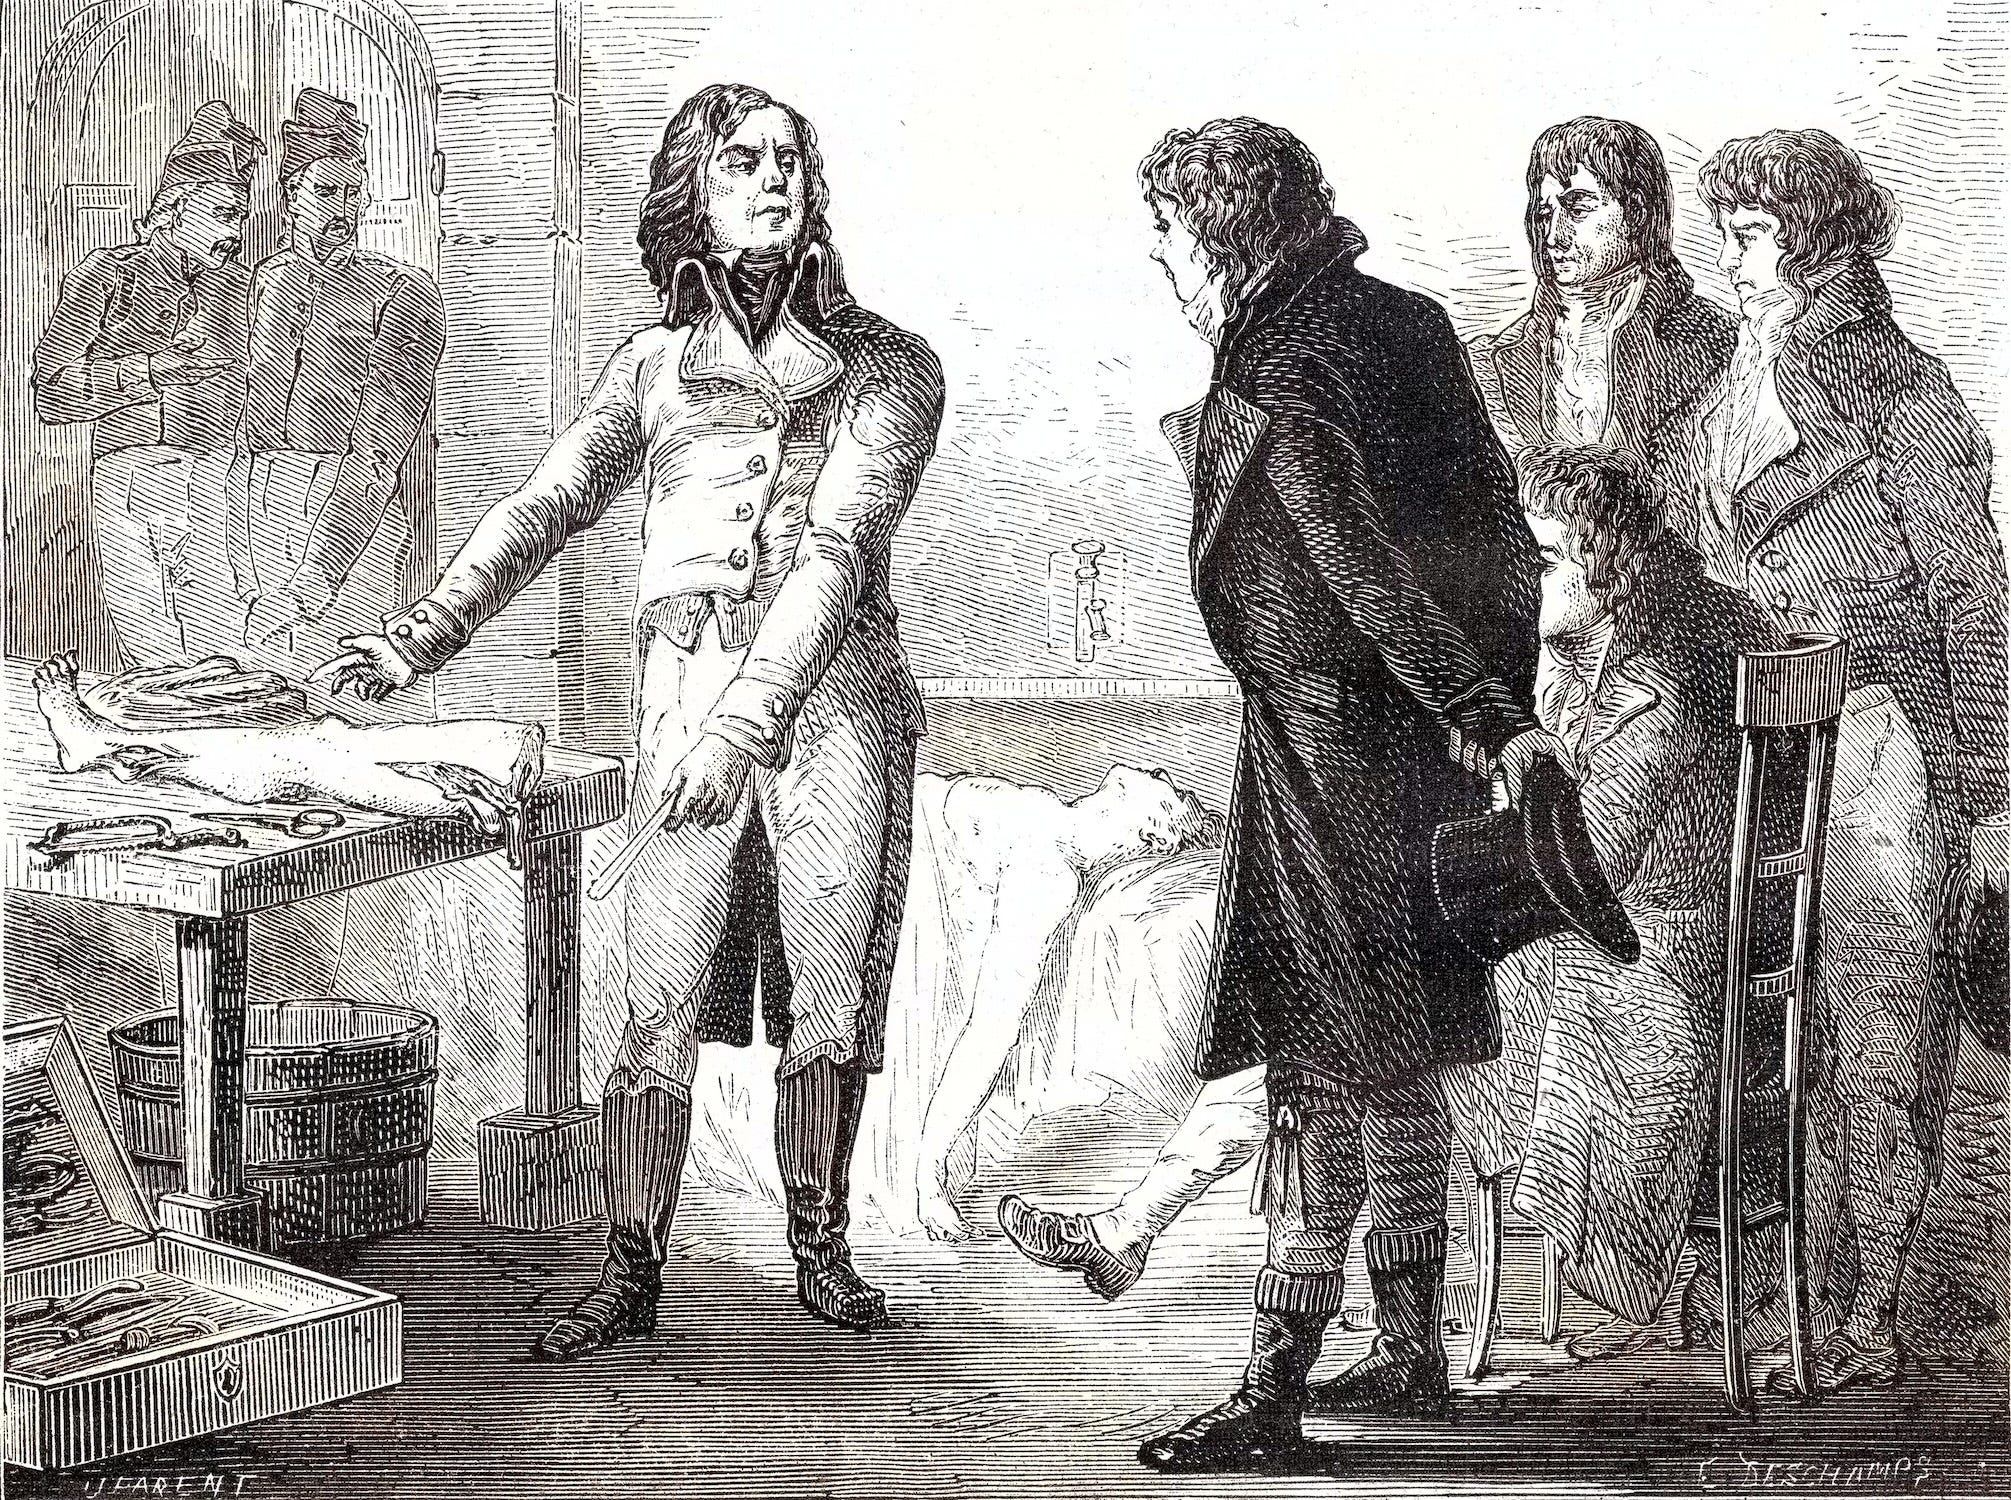 Gravur von mehreren Personen, die in der Nähe eines amputierten Beins stehen, mit einem Patienten im Hintergrund